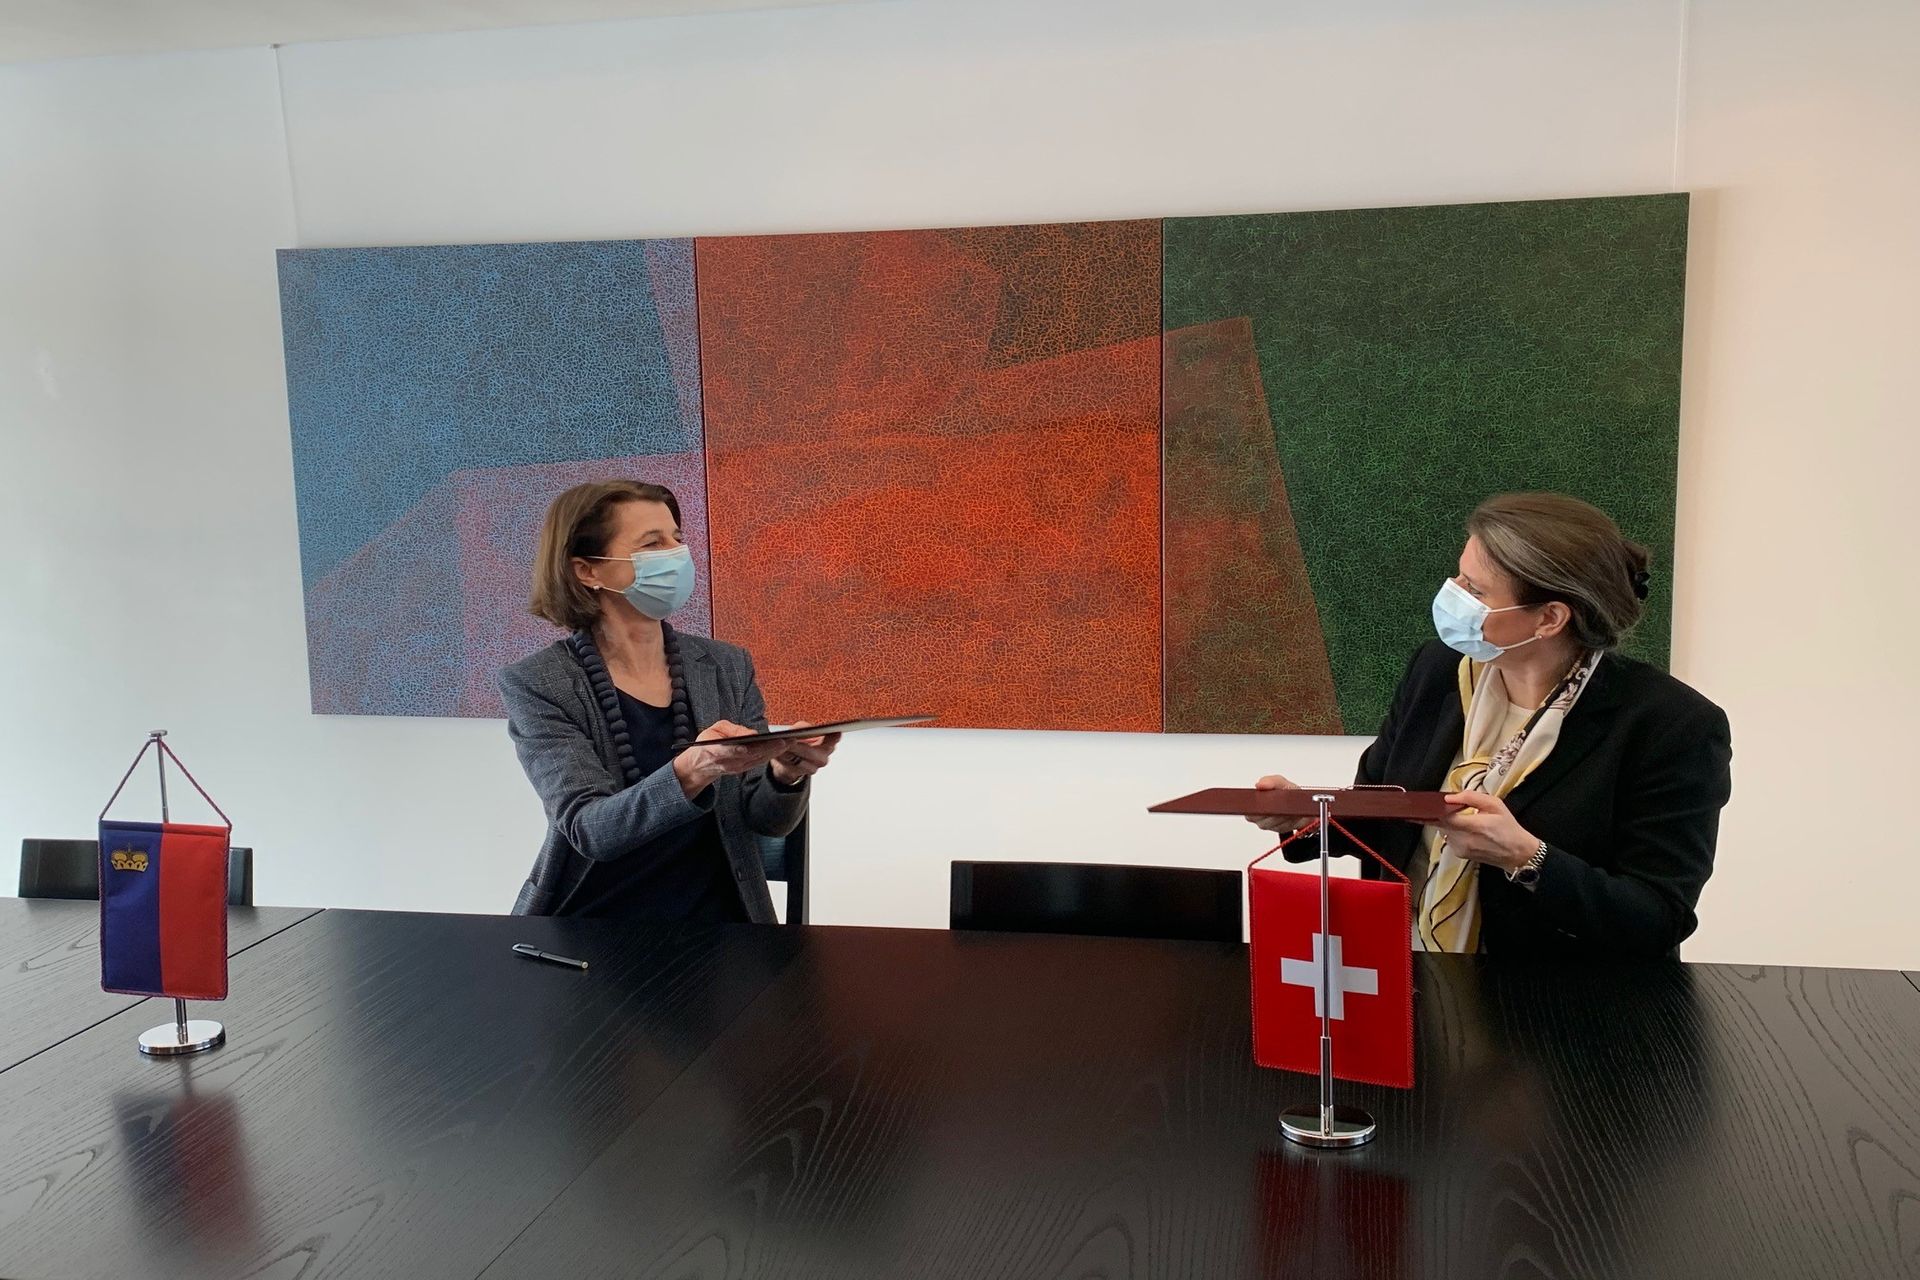 Размена споразума о иновацијама између швајцарске државне секретарке Мартине Хирајаме и амбасадорке Лихтенштајна у Берну Дорис Фрик